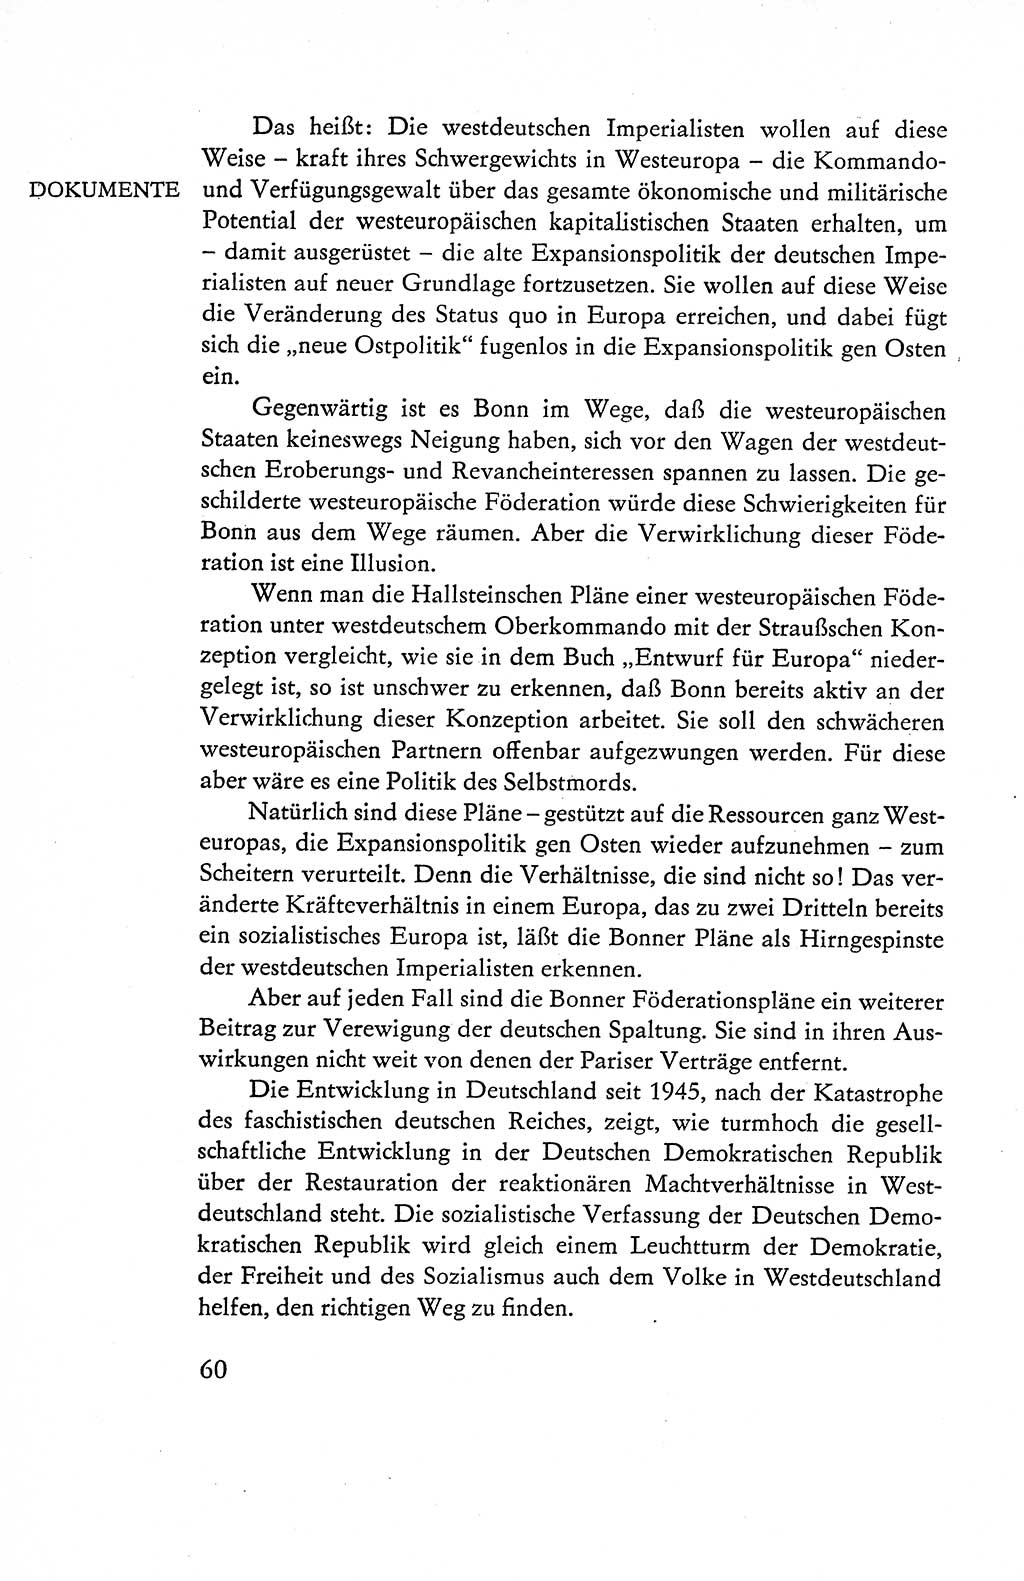 Verfassung der Deutschen Demokratischen Republik (DDR), Dokumente, Kommentar 1969, Band 1, Seite 60 (Verf. DDR Dok. Komm. 1969, Bd. 1, S. 60)